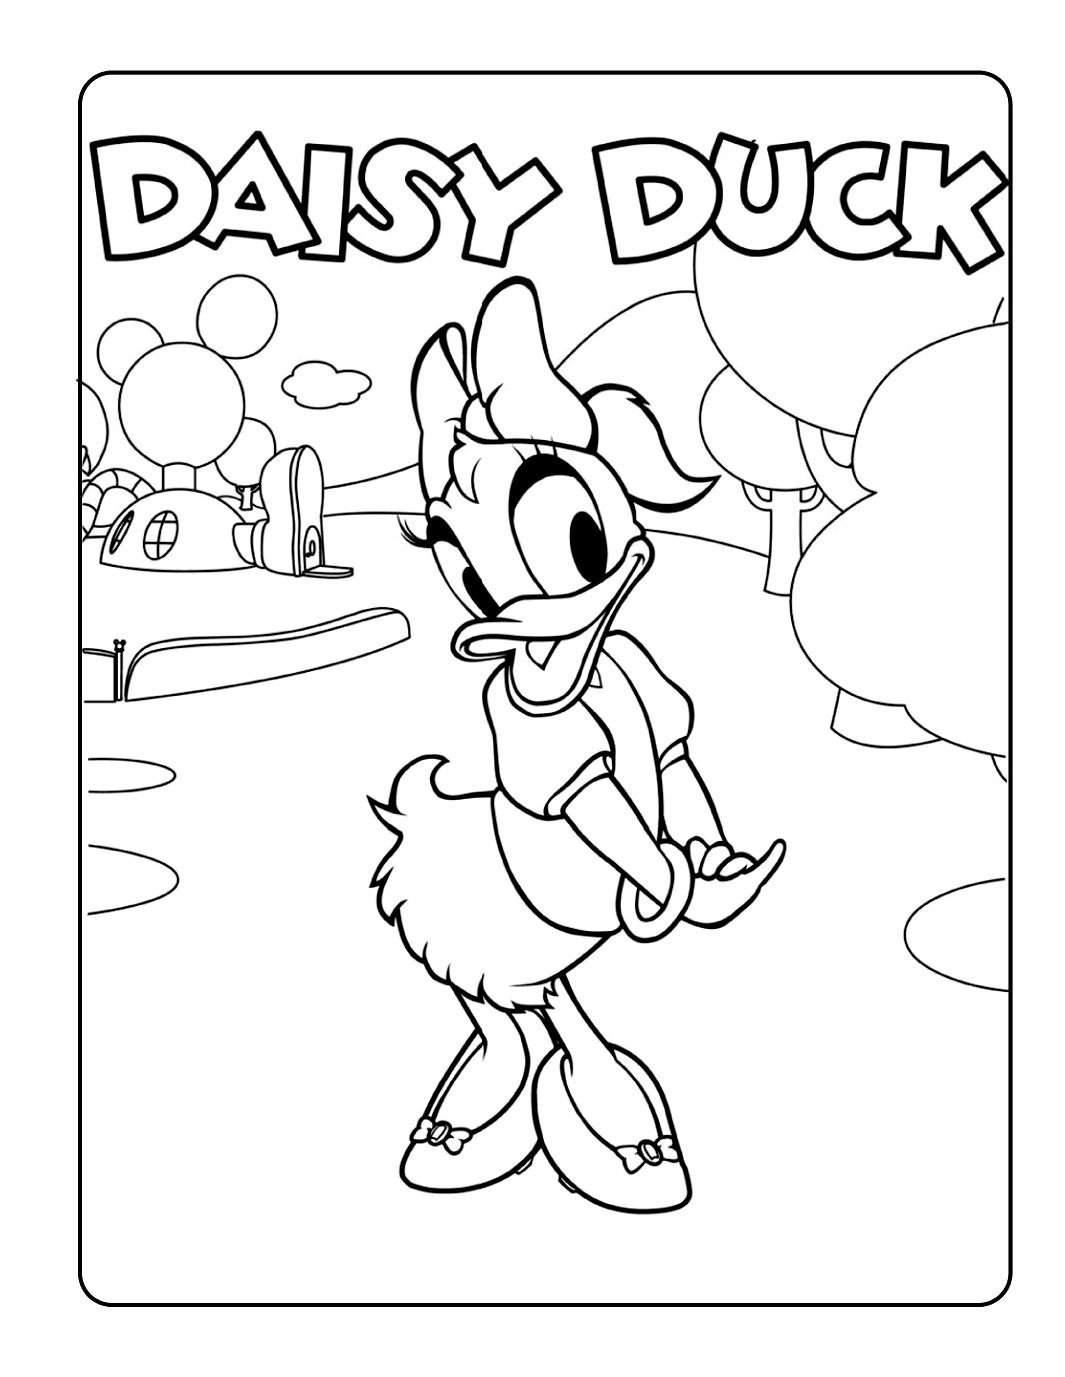 Daisy Duck em frente à casa do mickey